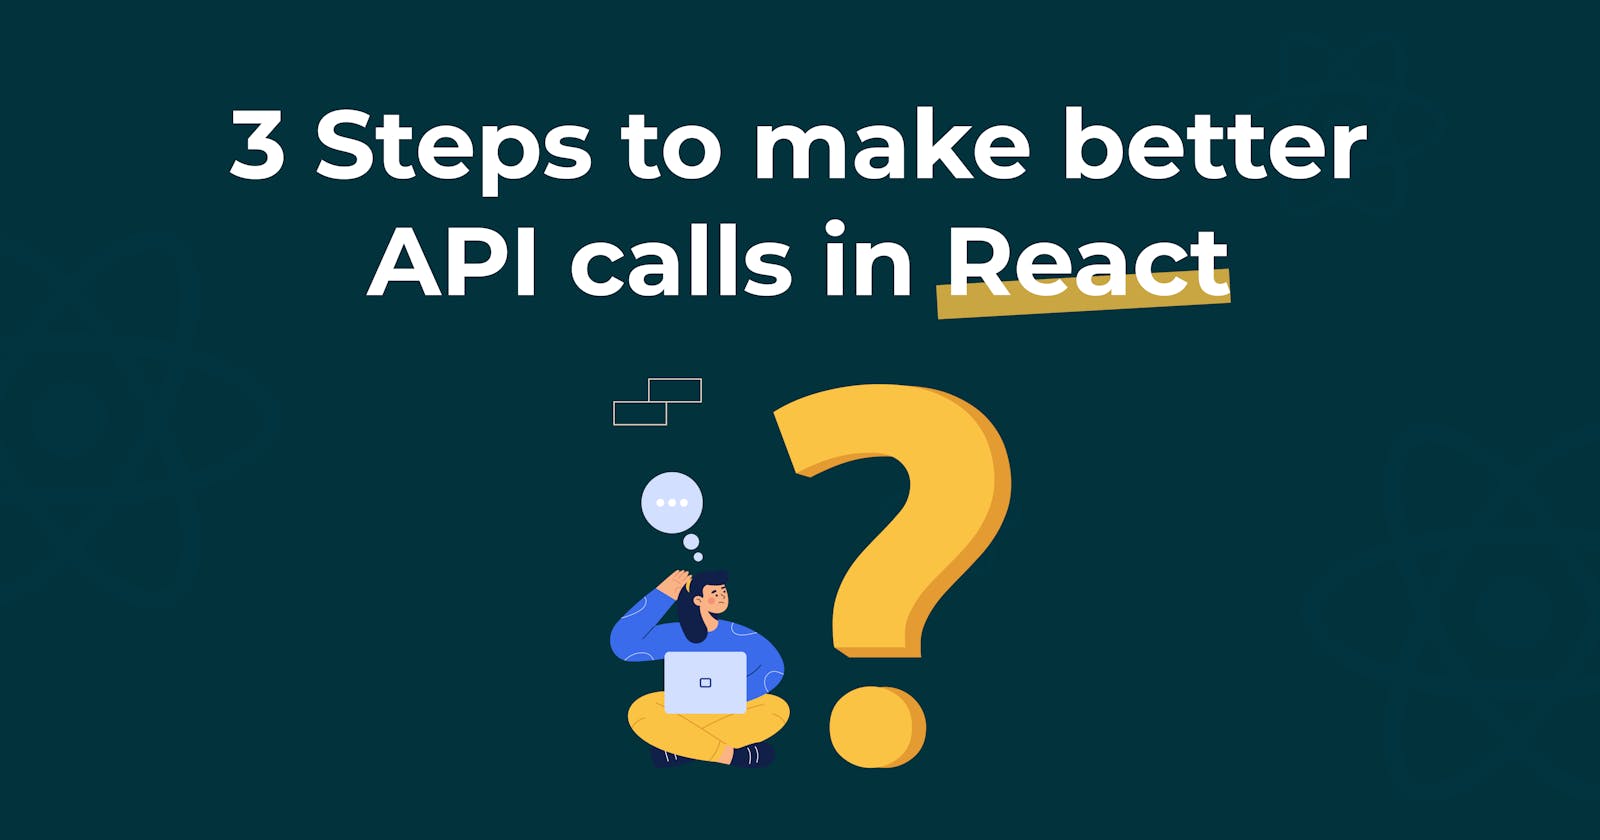 How to make API calls in React